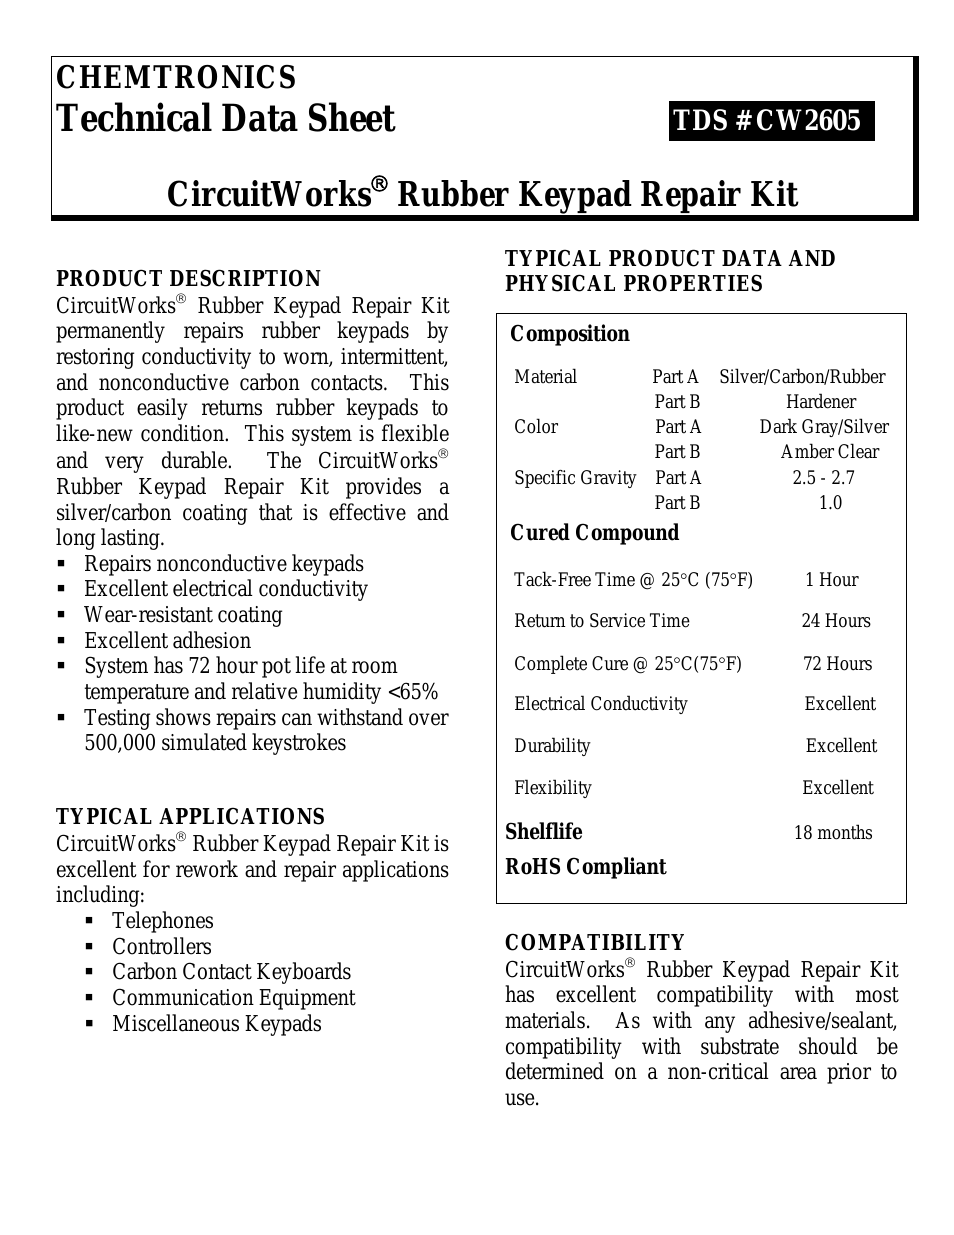 CircuitWorks® Rubber Keypad Repair Kit CW2605